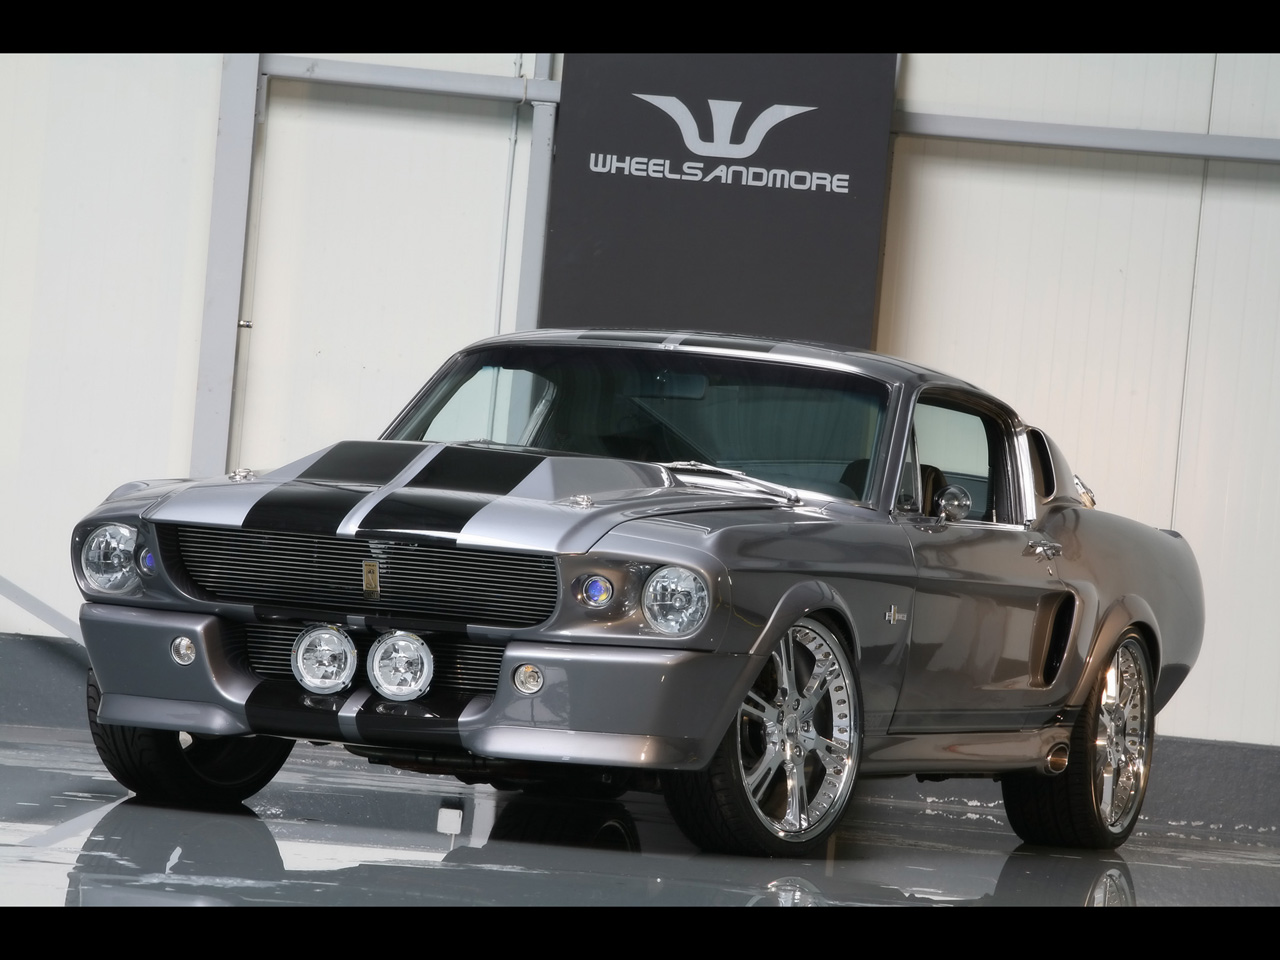 Mustang Shelby De Premi Re G N Ration D Une Part Cause La